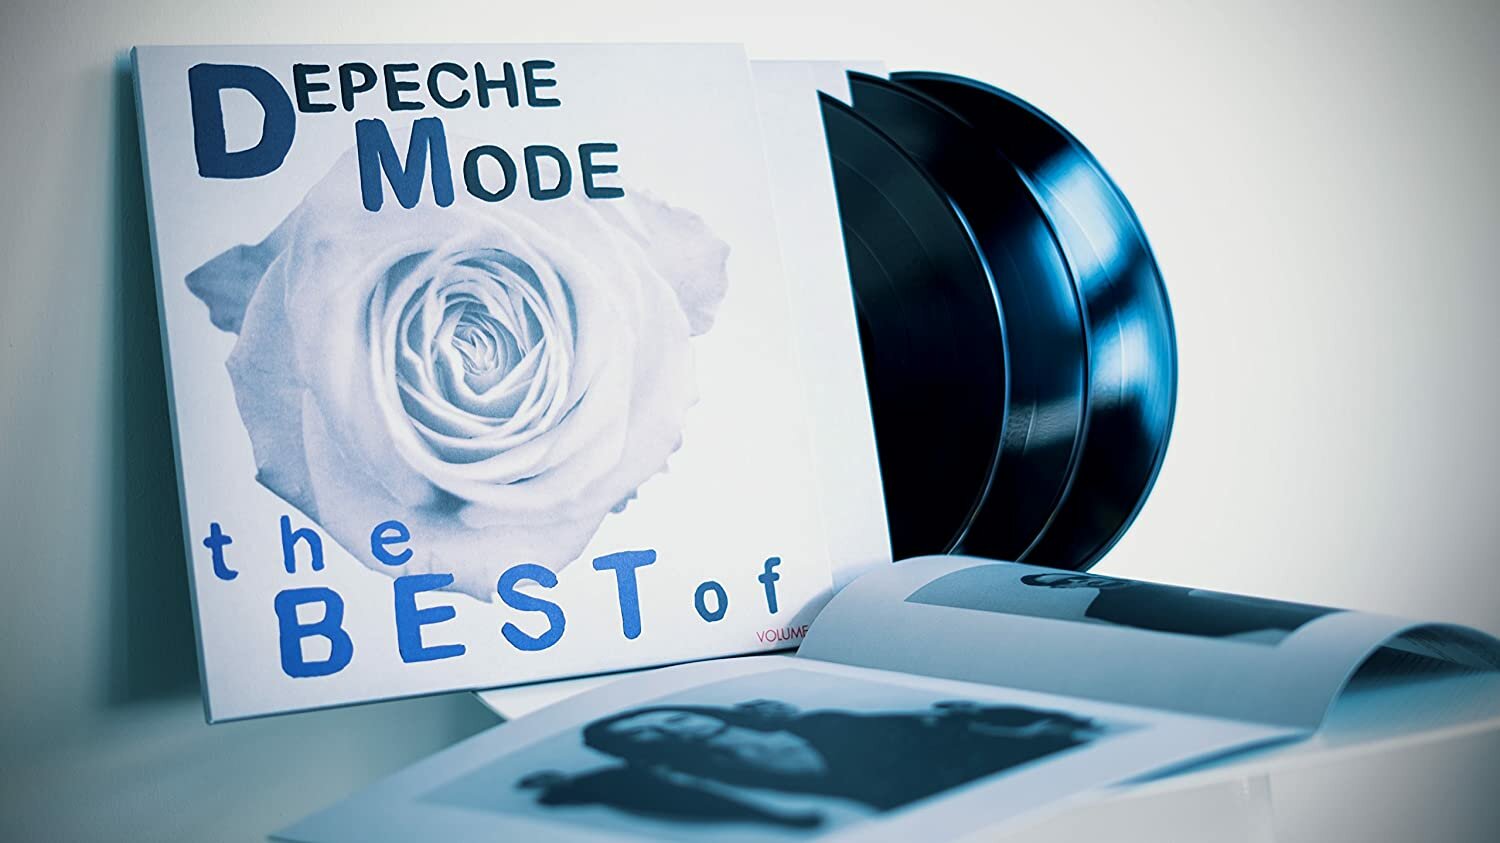 Depeche Mode ‎– The Best Of Depeche Mode: Volume 1/ Vinyl, 12" [3LP/180 Gram/Printed Inner Sleeves](Compilation, Reissue 2017)